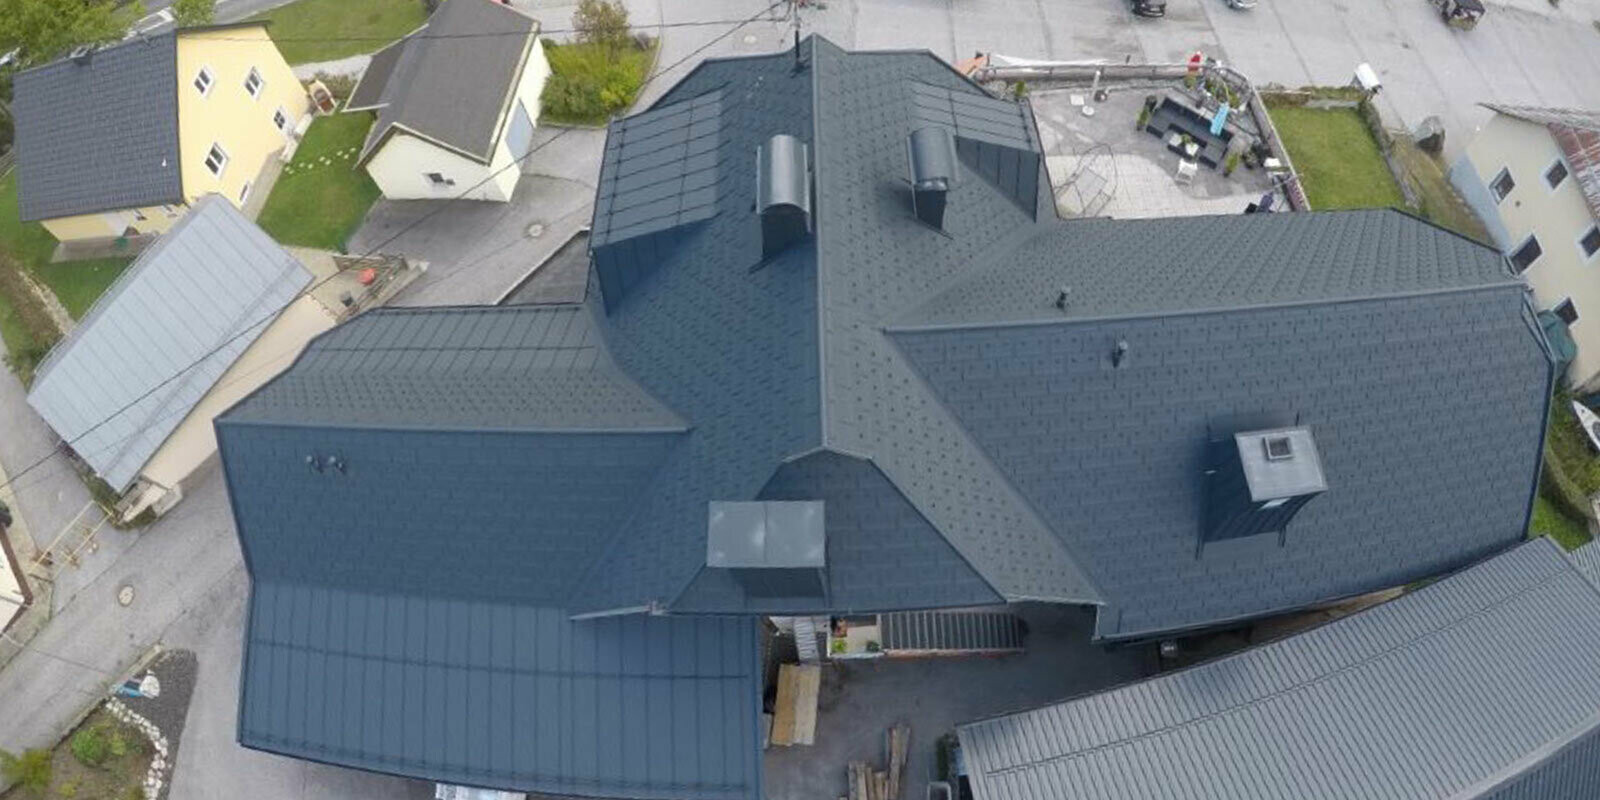 Ristrutturazione di un tetto ad ampia superficie con molti dettagli - compluvi, abbaini e camini. Il tetto è stato coperto con tegole R.16 PREFA in alluminio color antracite.